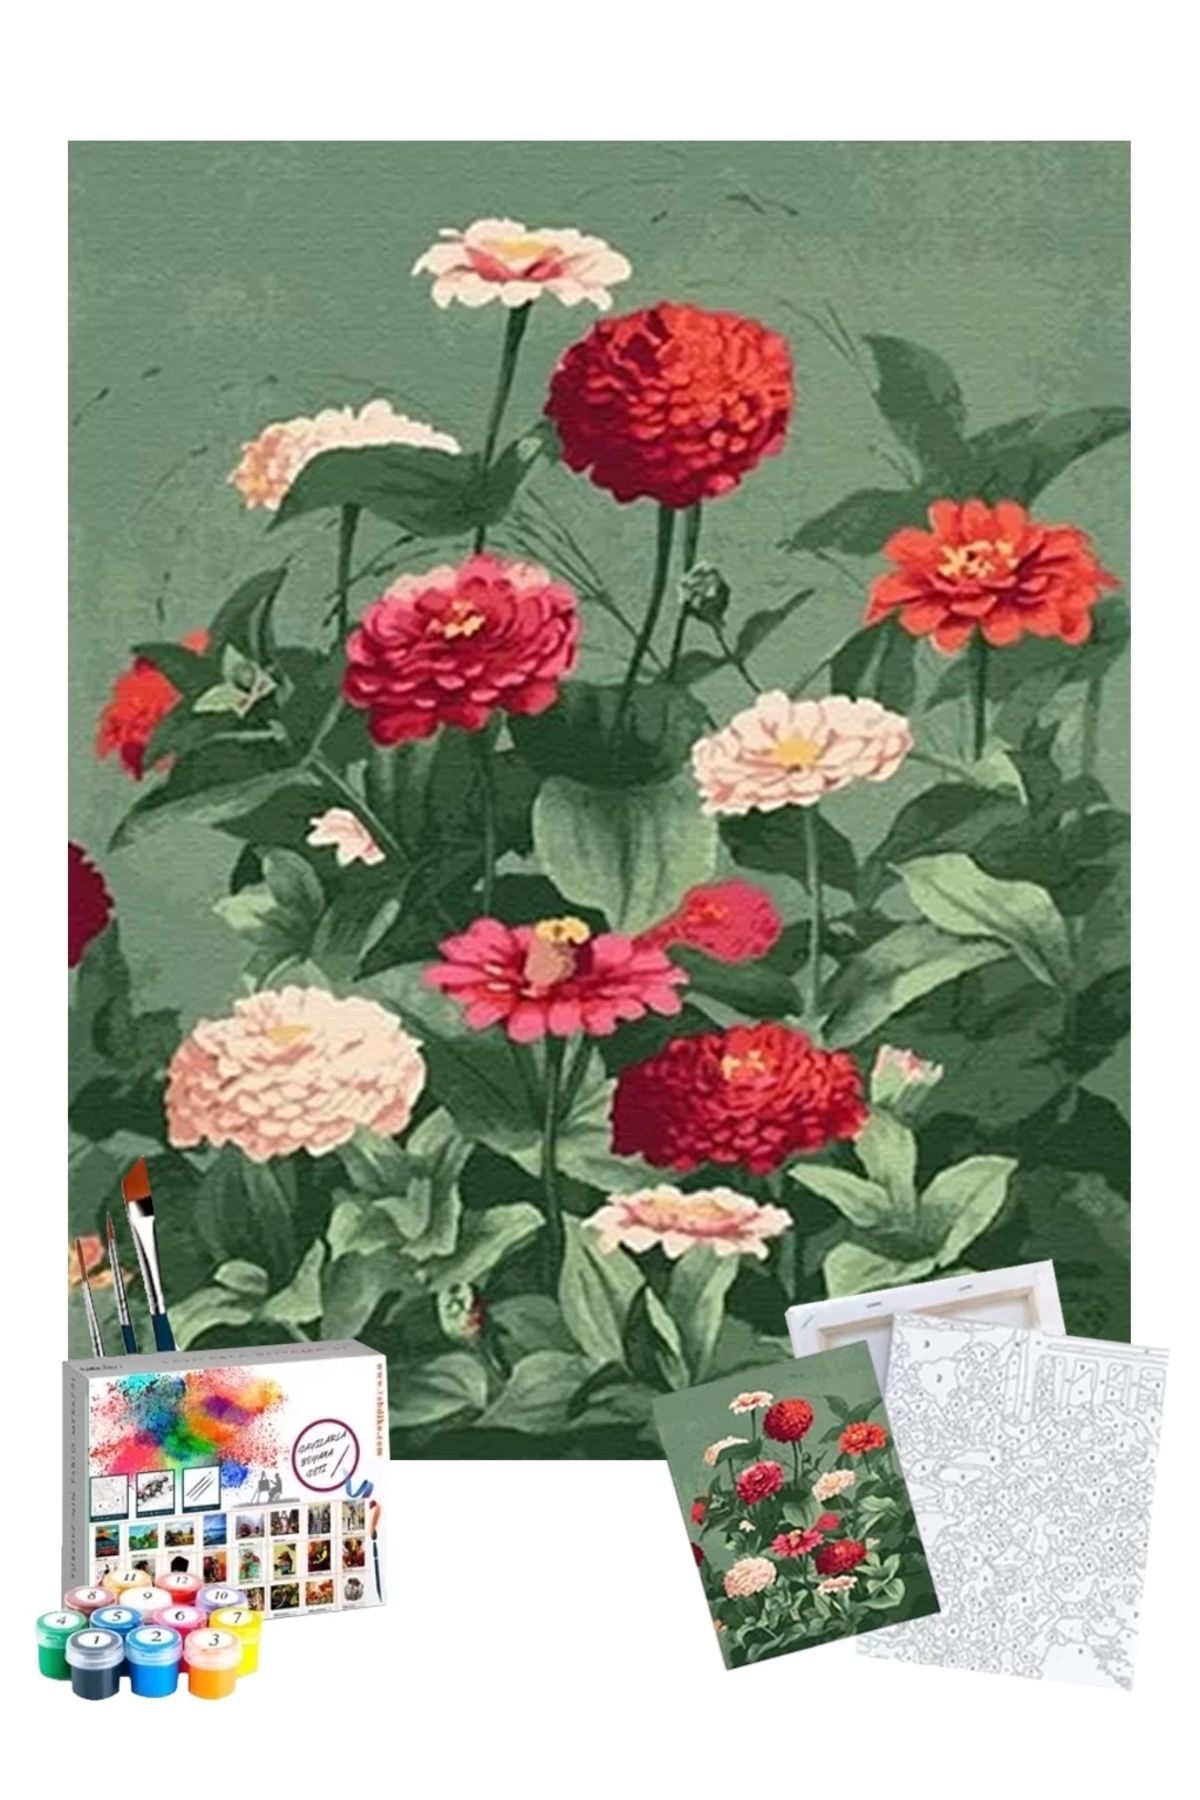 Tabdiko Sayılarla Boyama Seti 40 X 50 Cm Tuval Şasesine Gerili Mevsim Çiçeği